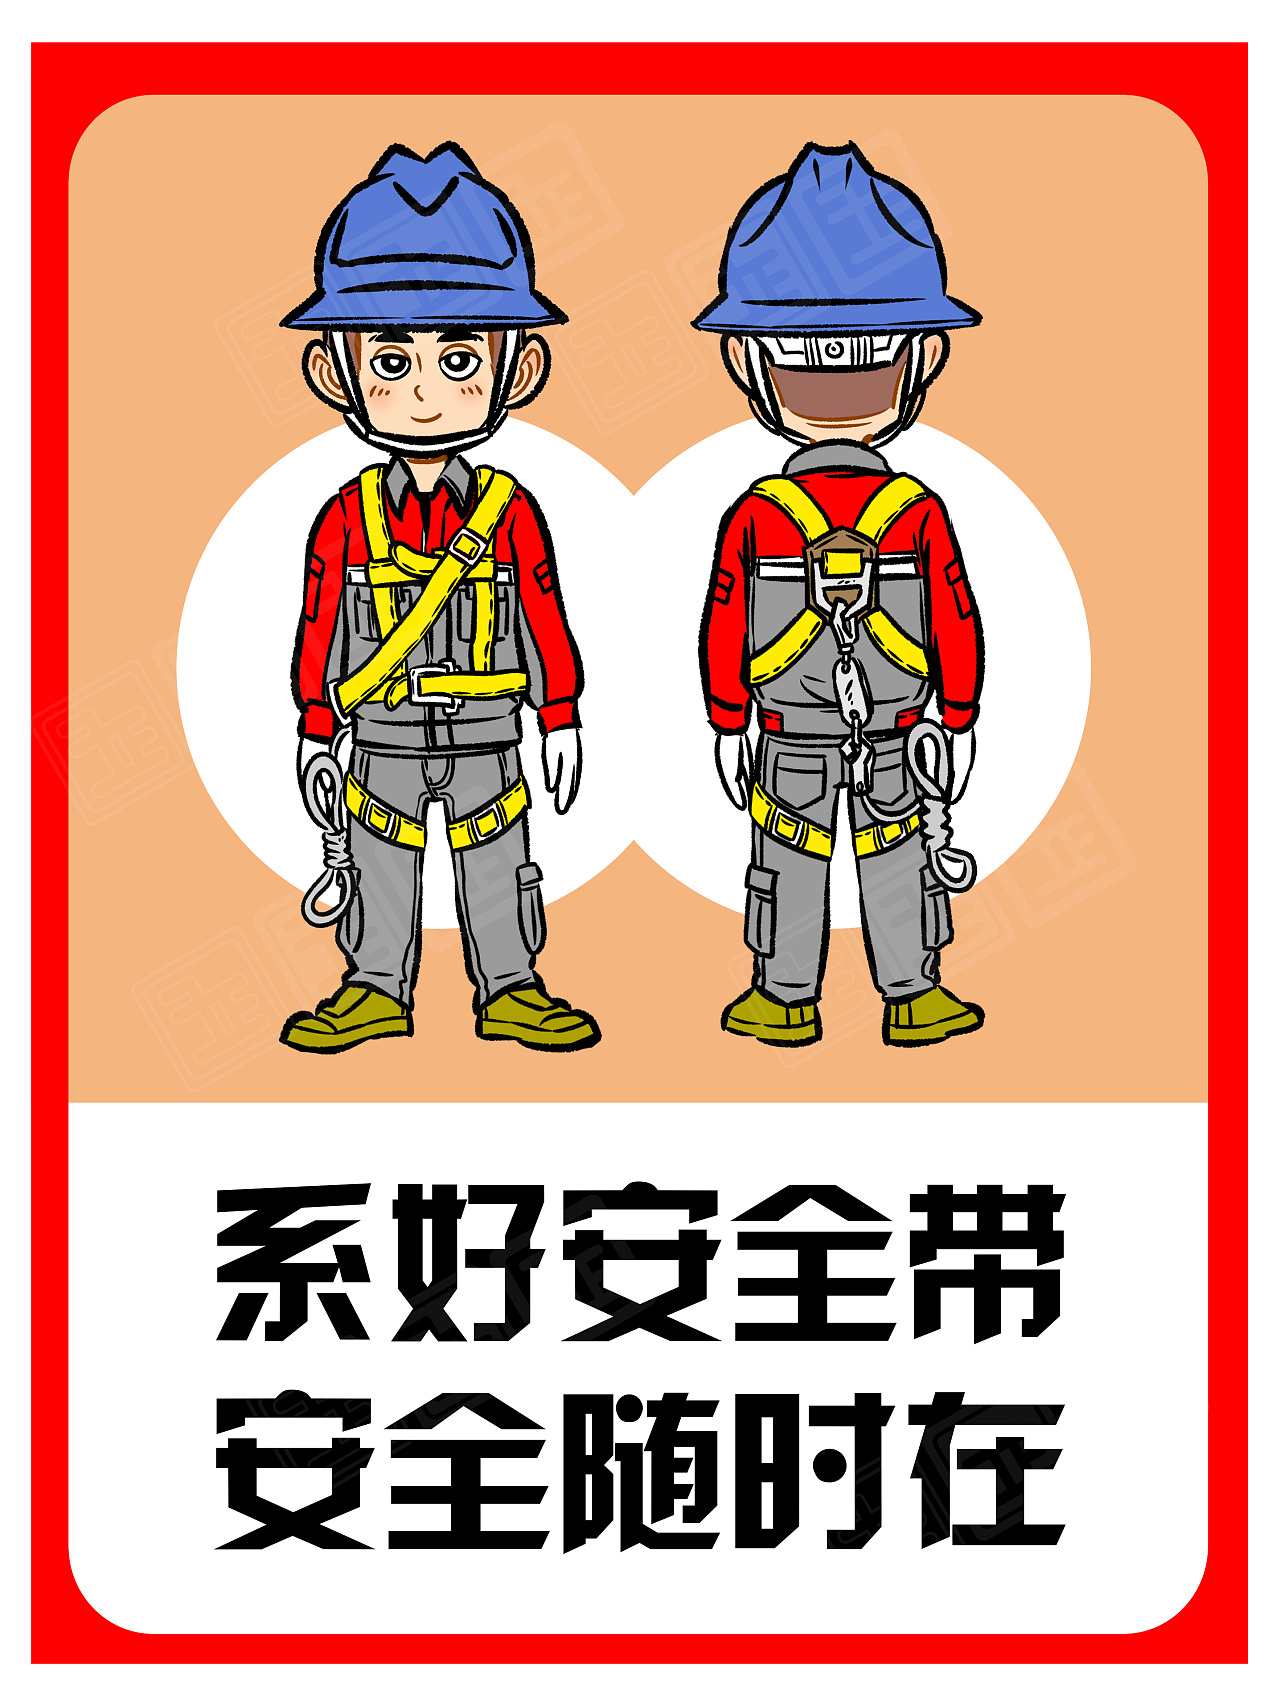 消防防火安全学习消防安全知识科普插画图片-千库网